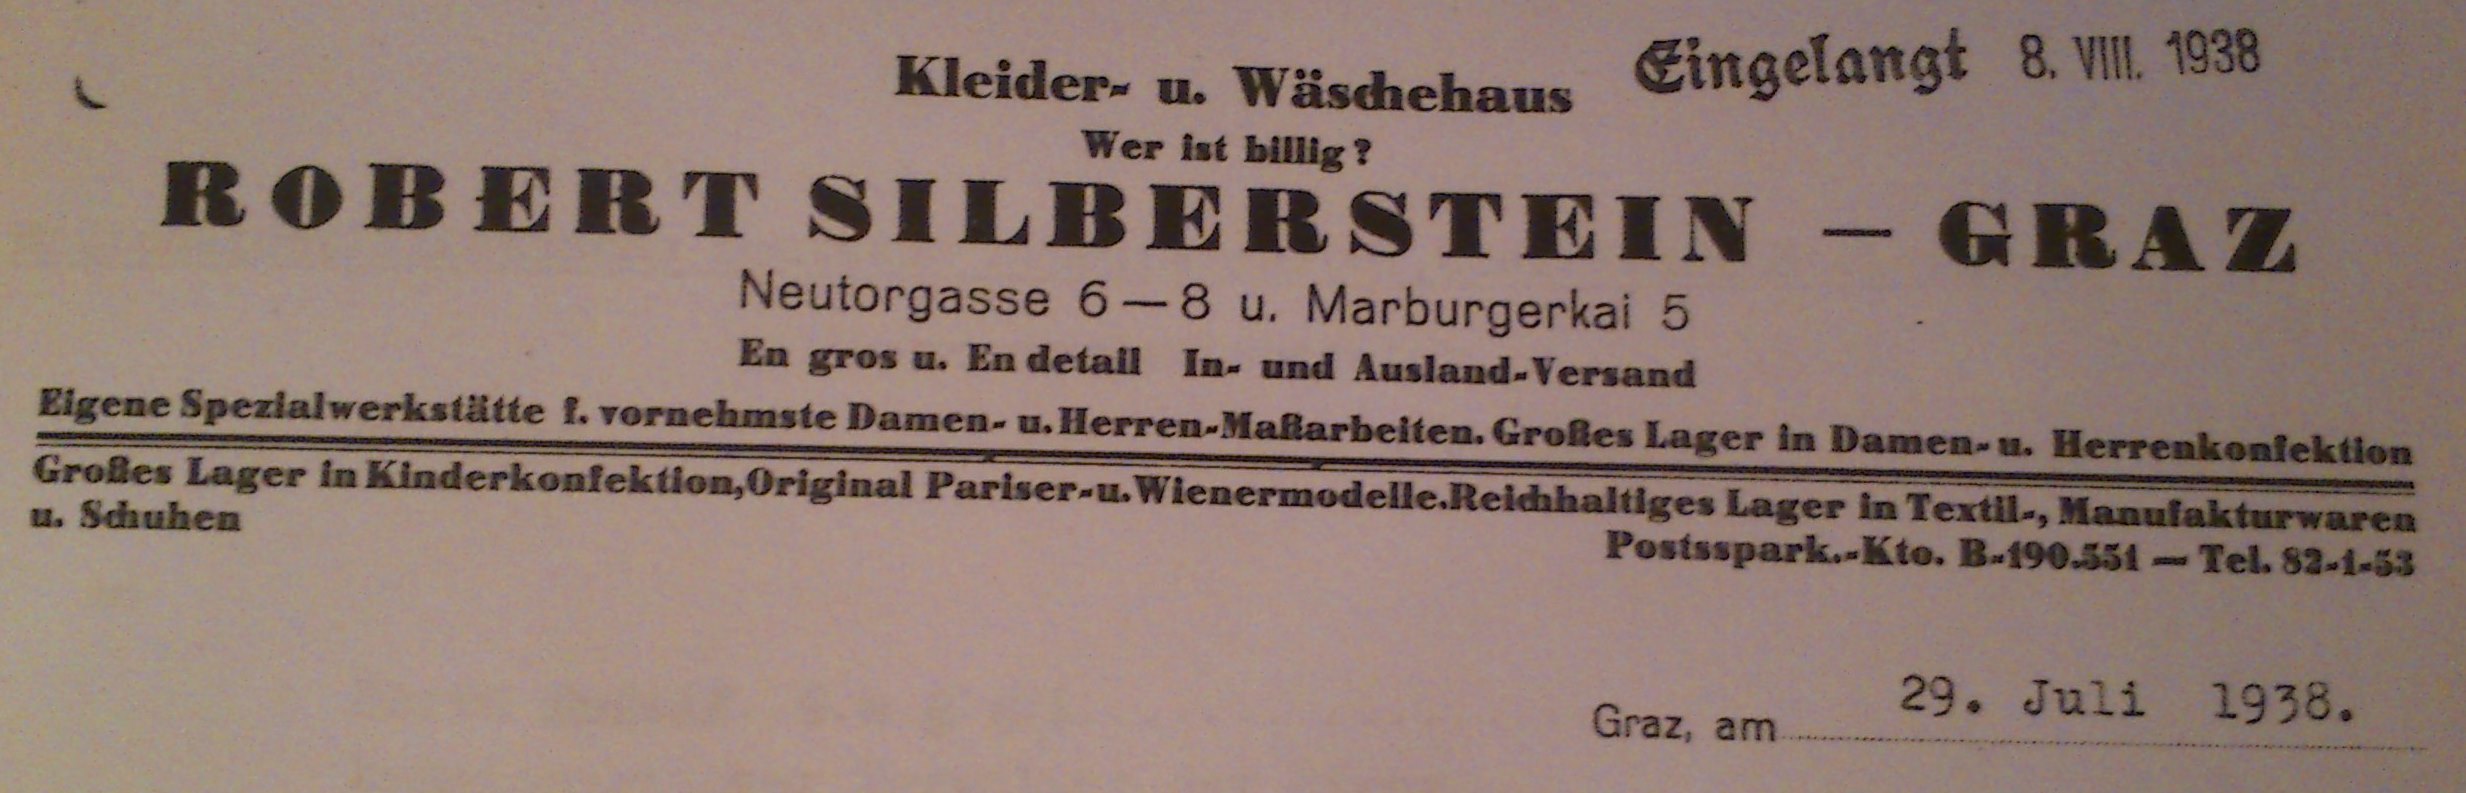 Briefzeile der Firma Robert Silberstein Quelle: Steiermärkisches Landesarchiv